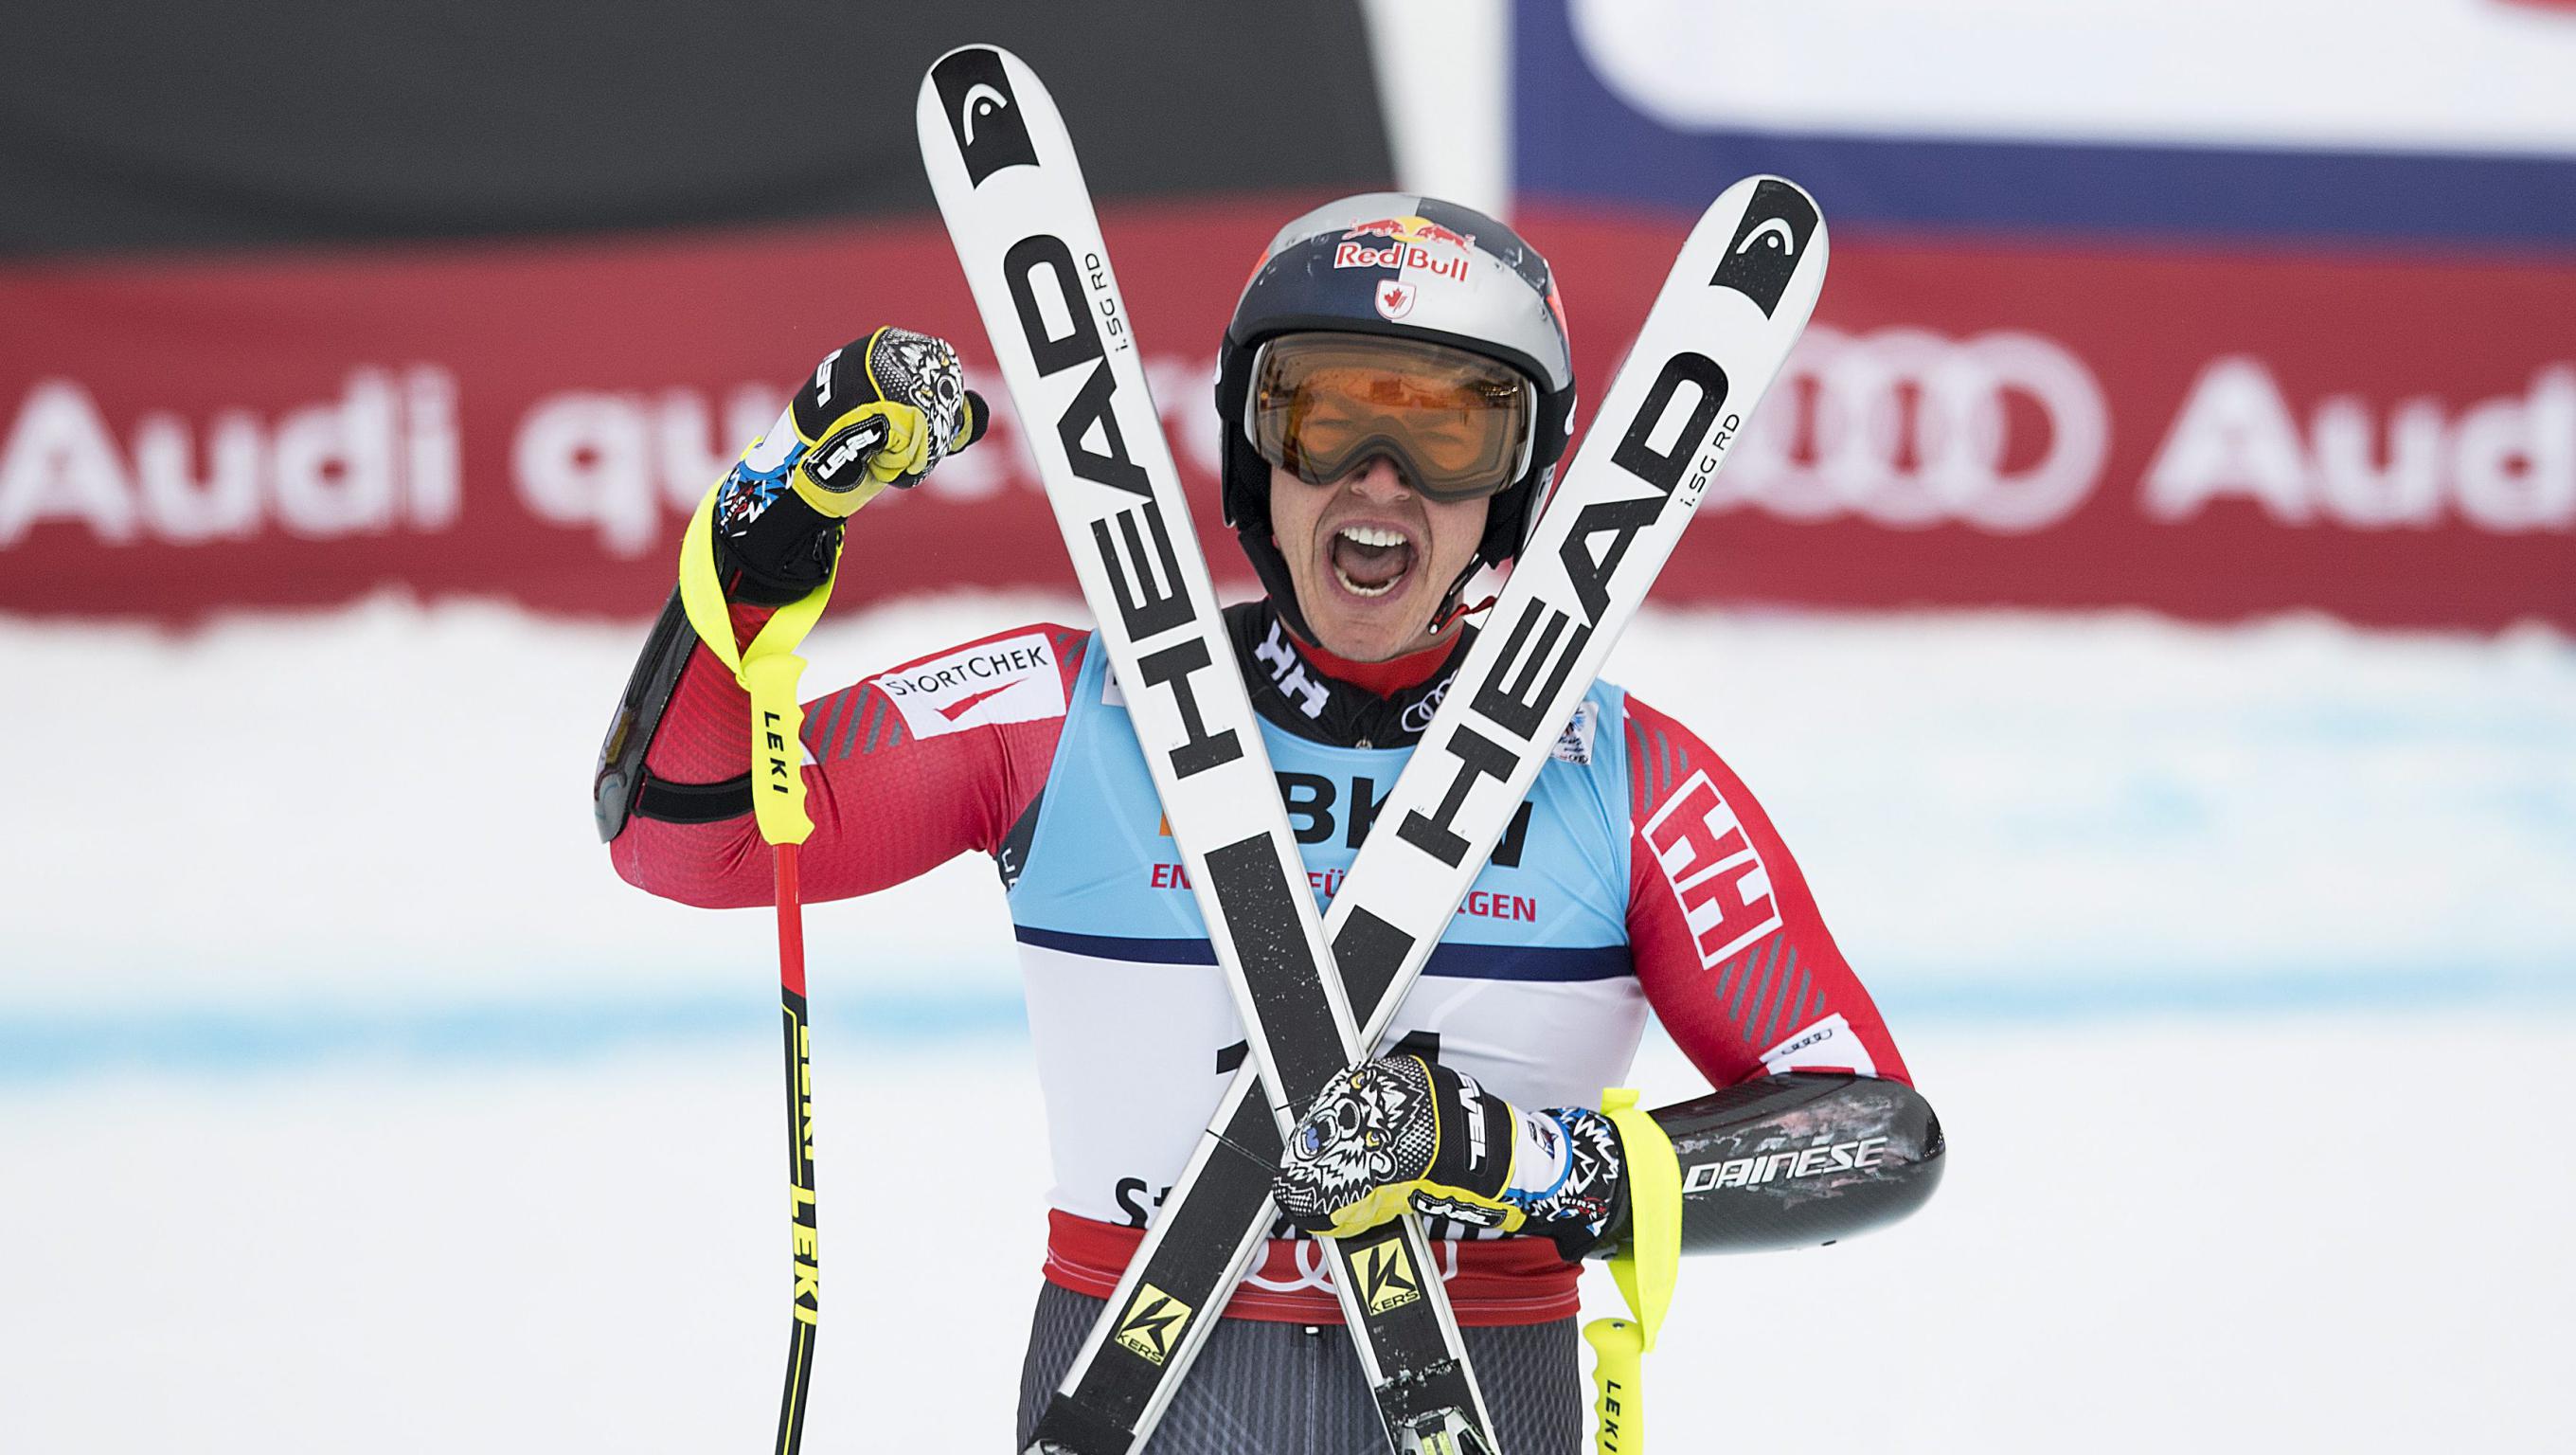 Erik Guay d'Équipe Canada gonflé à bloc après sa descente au super-G masculin des Mondiaux de ski alpin à St. Moritz, en Suisse, le 8 février 2017. (Peter Schneider/Keystone via AP)